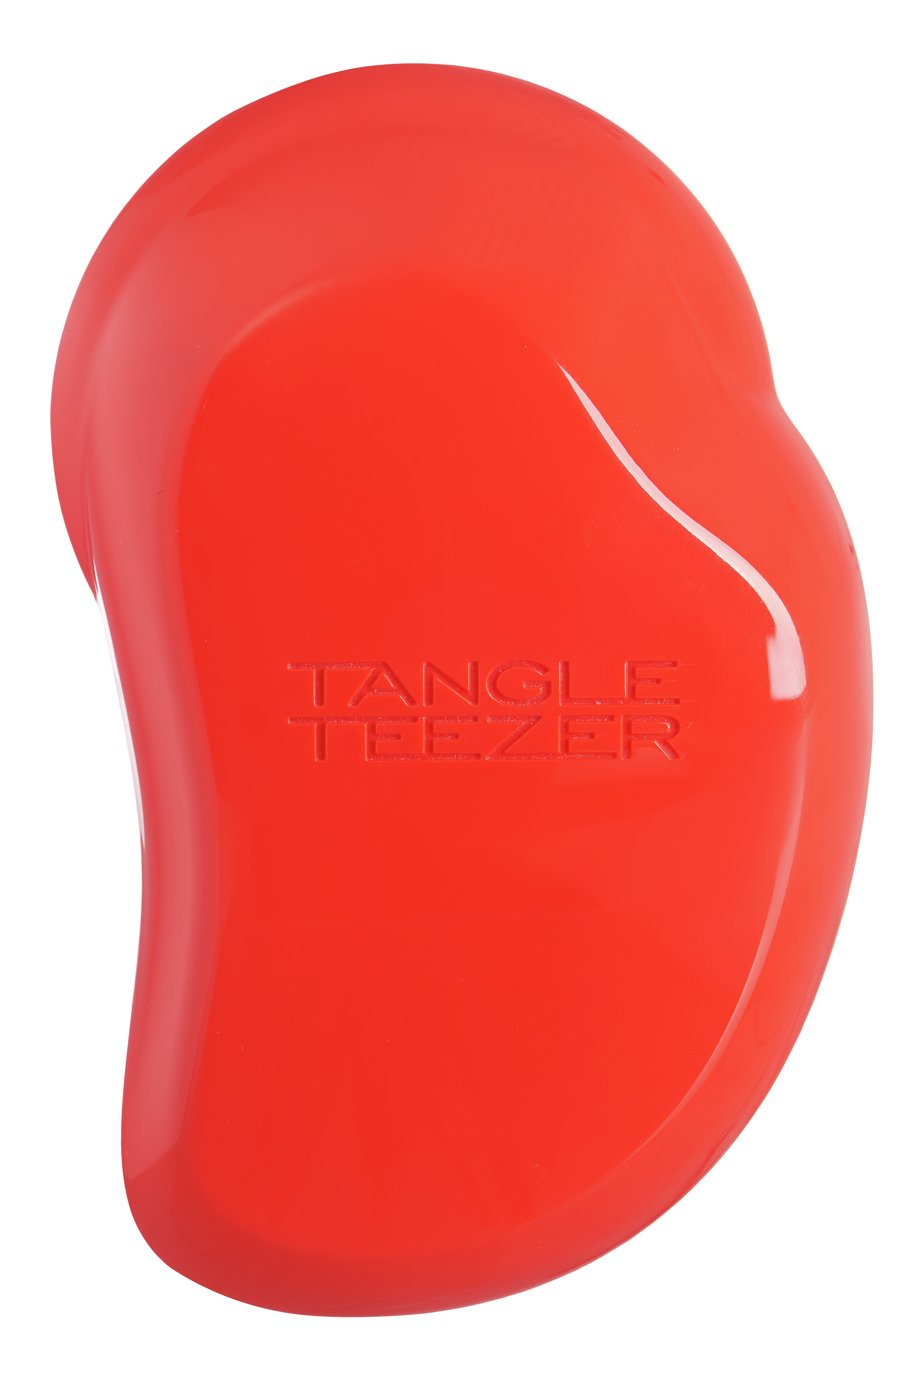 Tangle Teezer Original Detangling Hairbrush